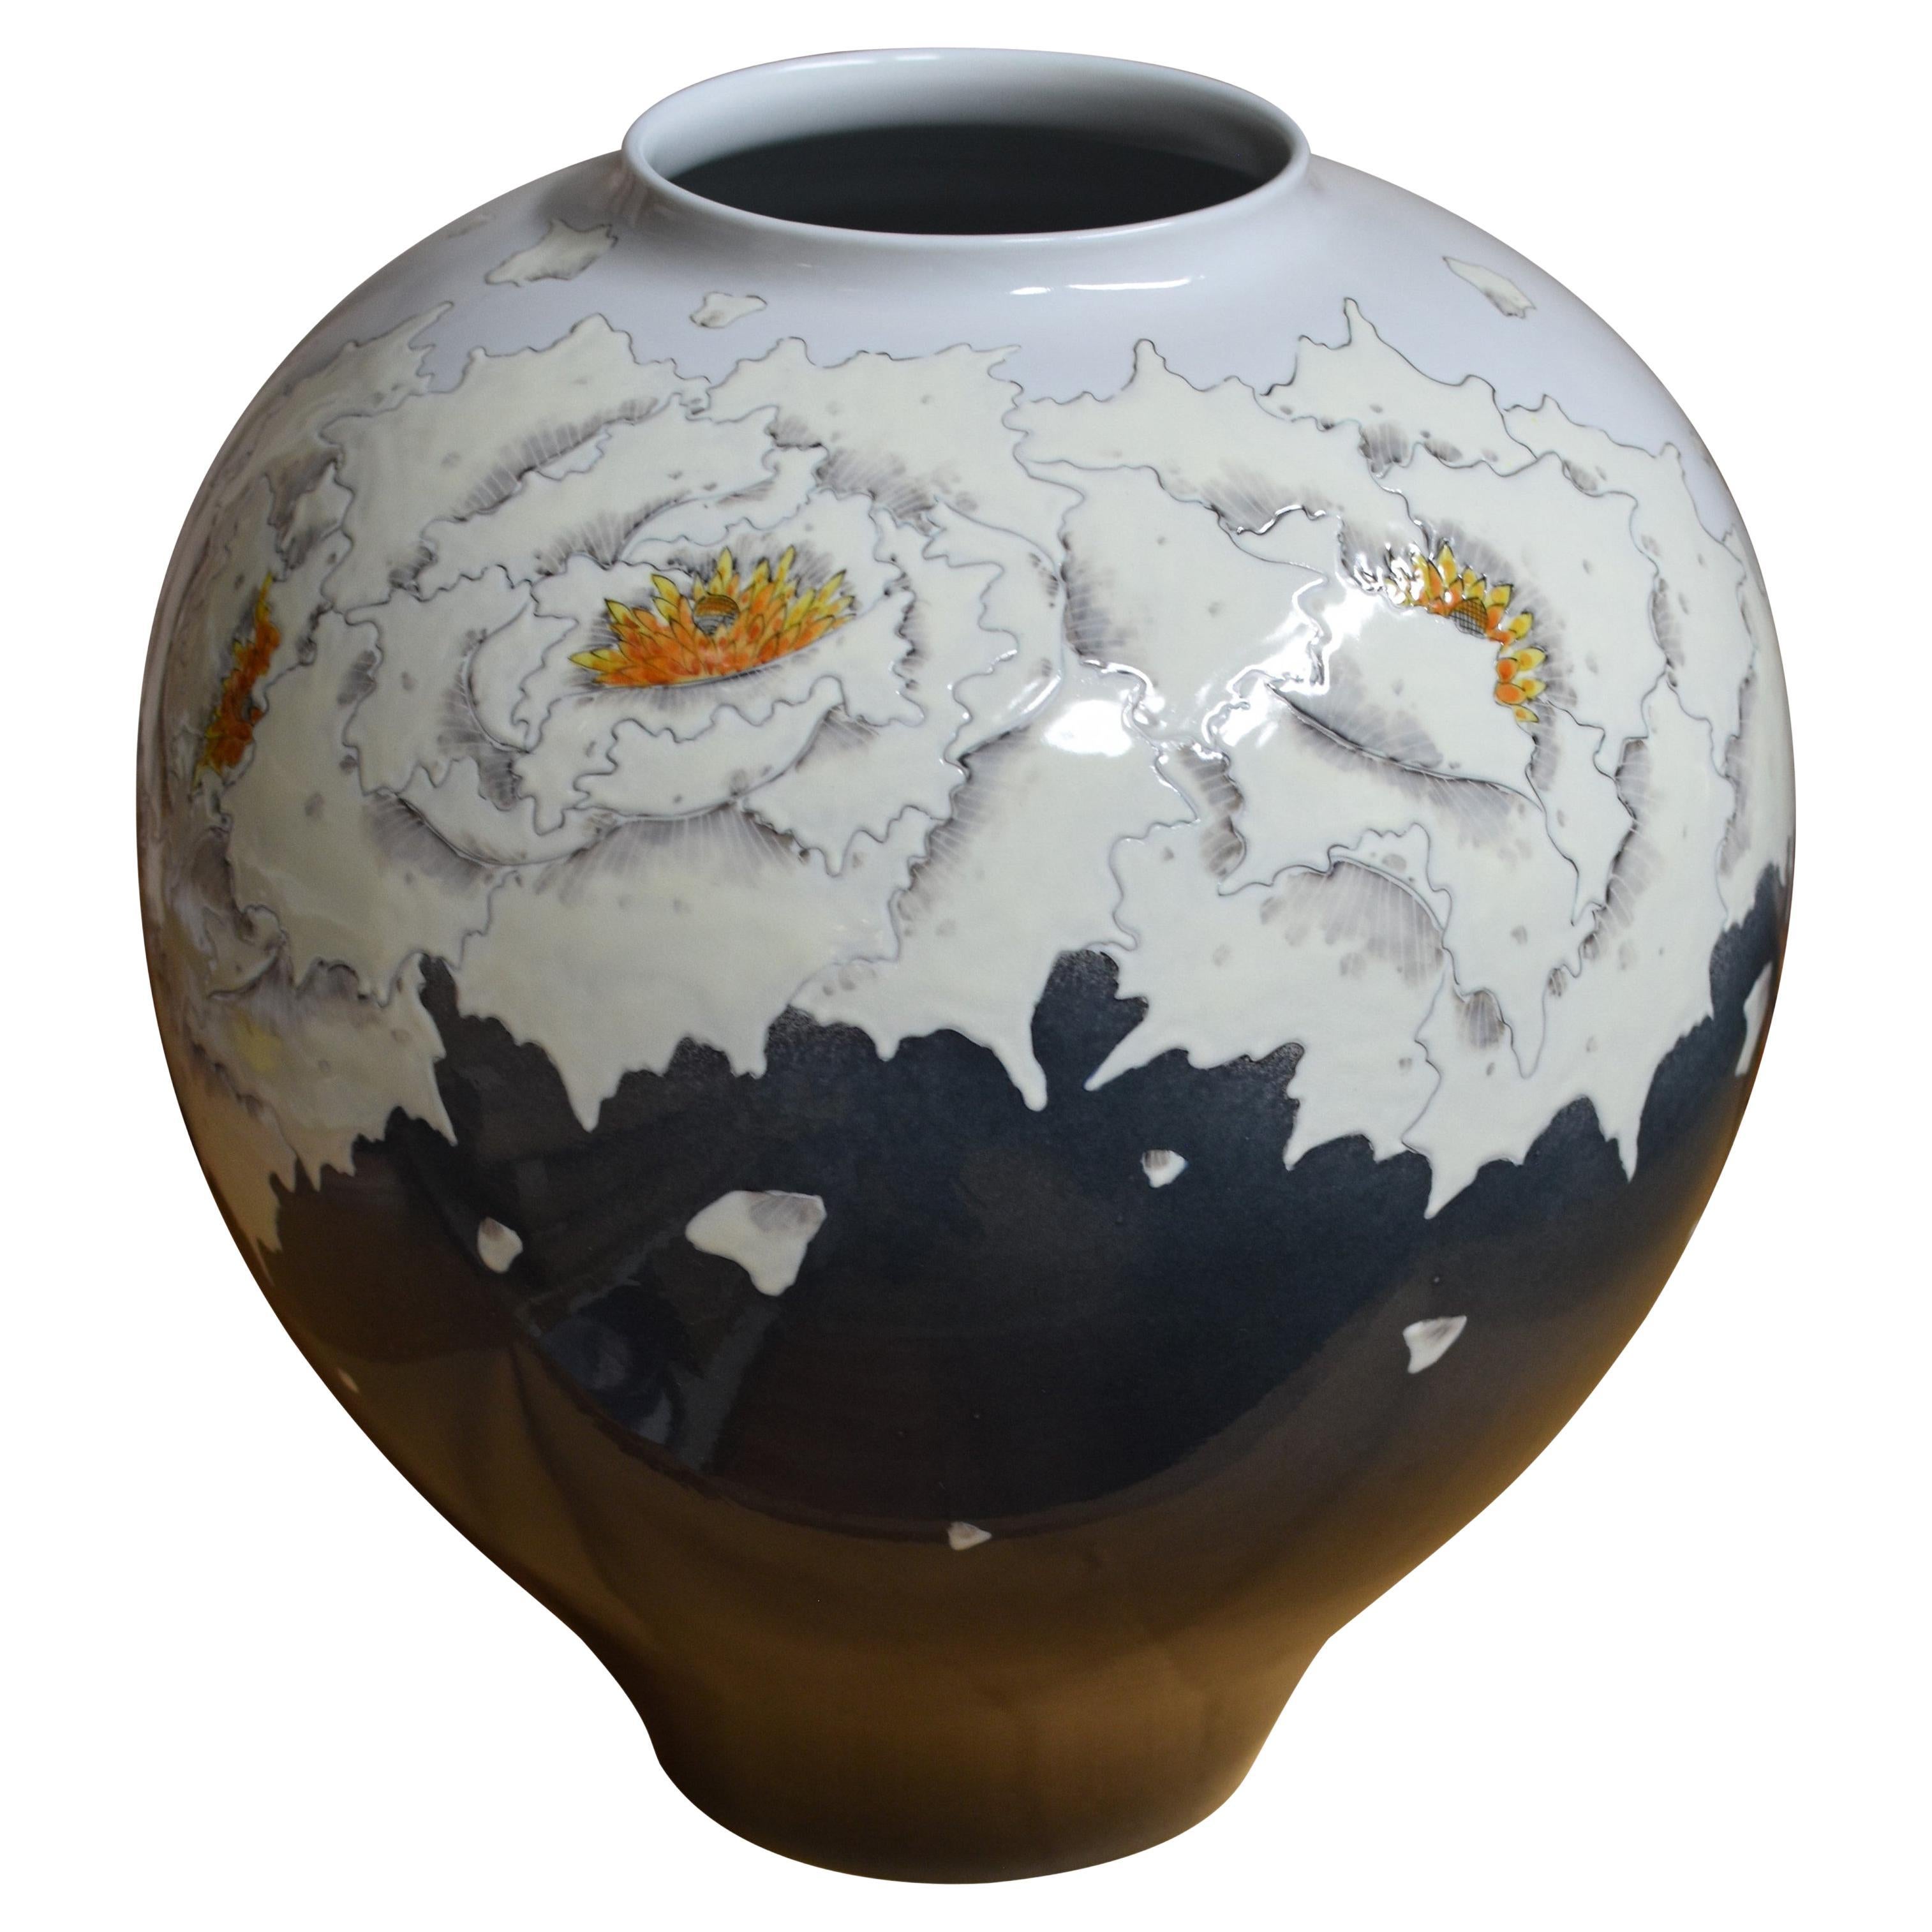 Contemporary Japanese Cream Black White Porcelain Vase by Master Artist